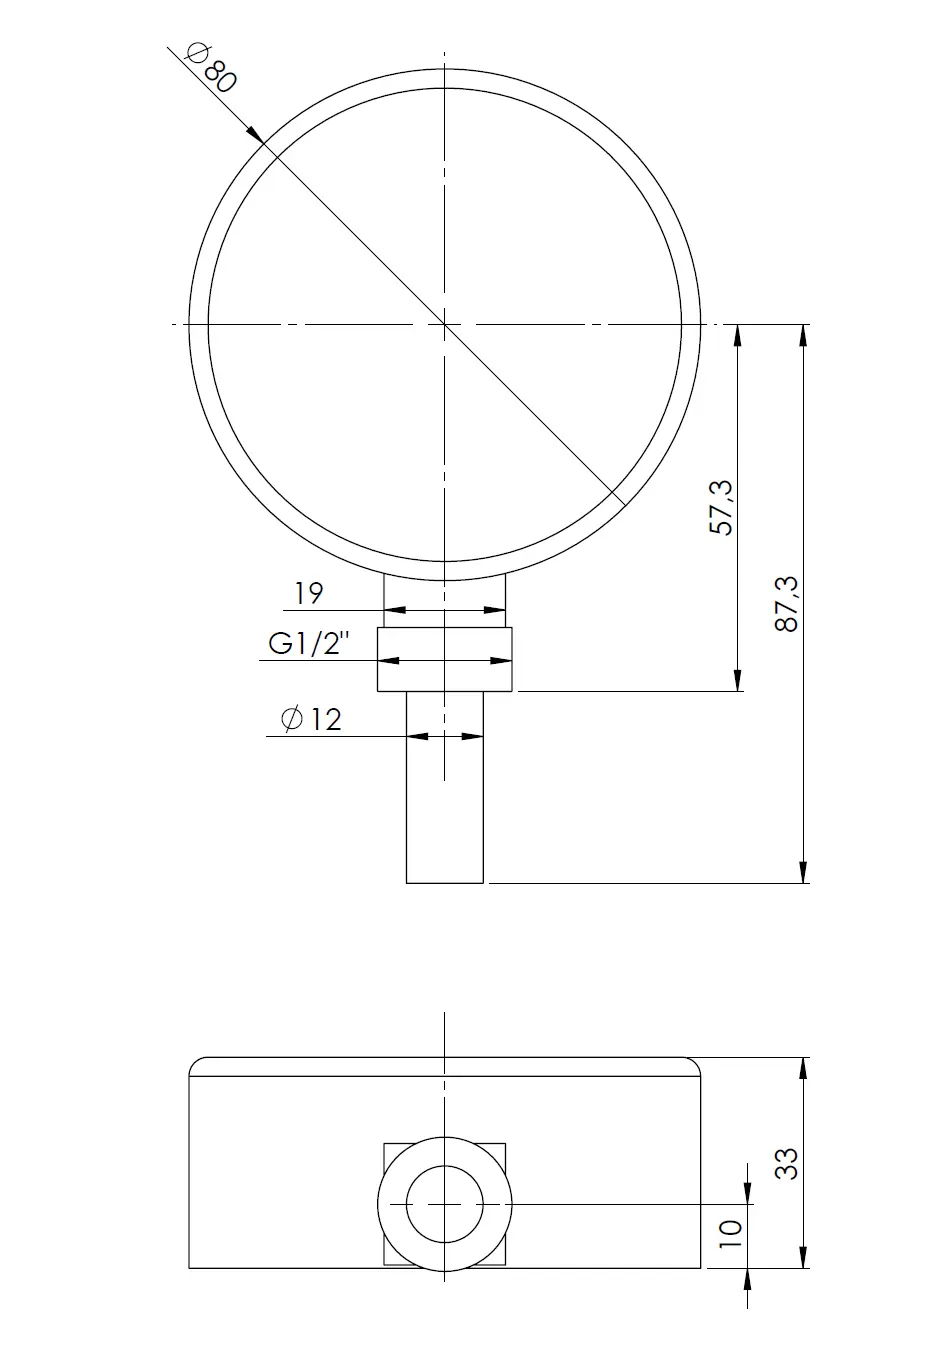 Termometr bimetaliczny BiTh 80, fi80 mm, -20÷60°C, L 40 mm, G1/2", rad, kl. 2 - budowa